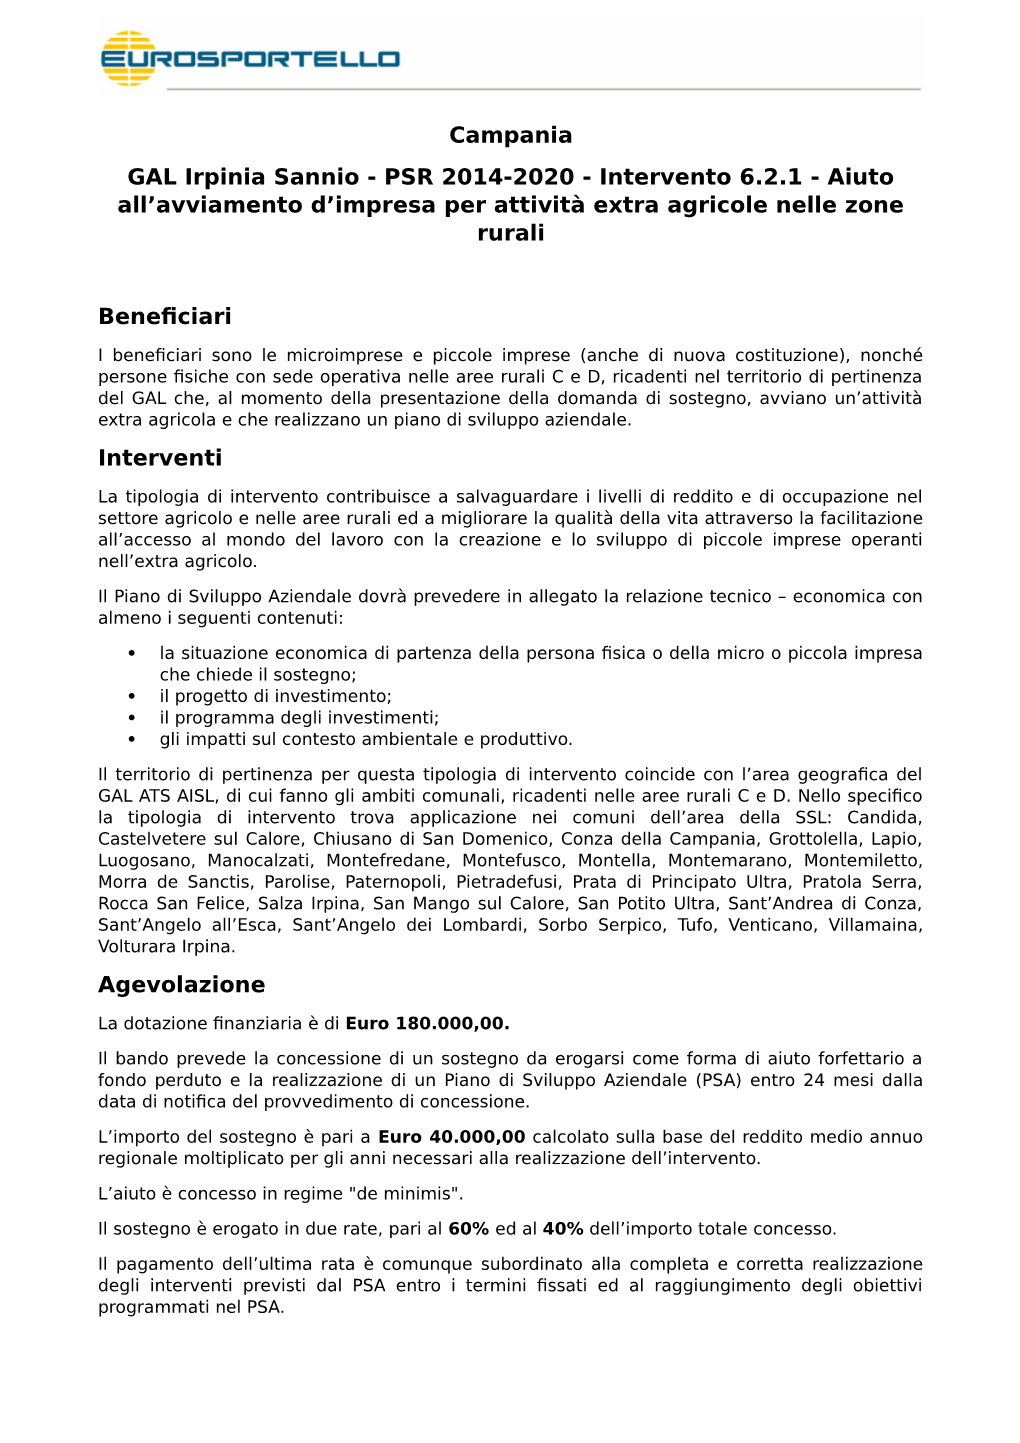 Campania GAL Irpinia Sannio - PSR 2014-2020 - Intervento 6.2.1 - Aiuto All’Avviamento D’Impresa Per Attività Extra Agricole Nelle Zone Rurali